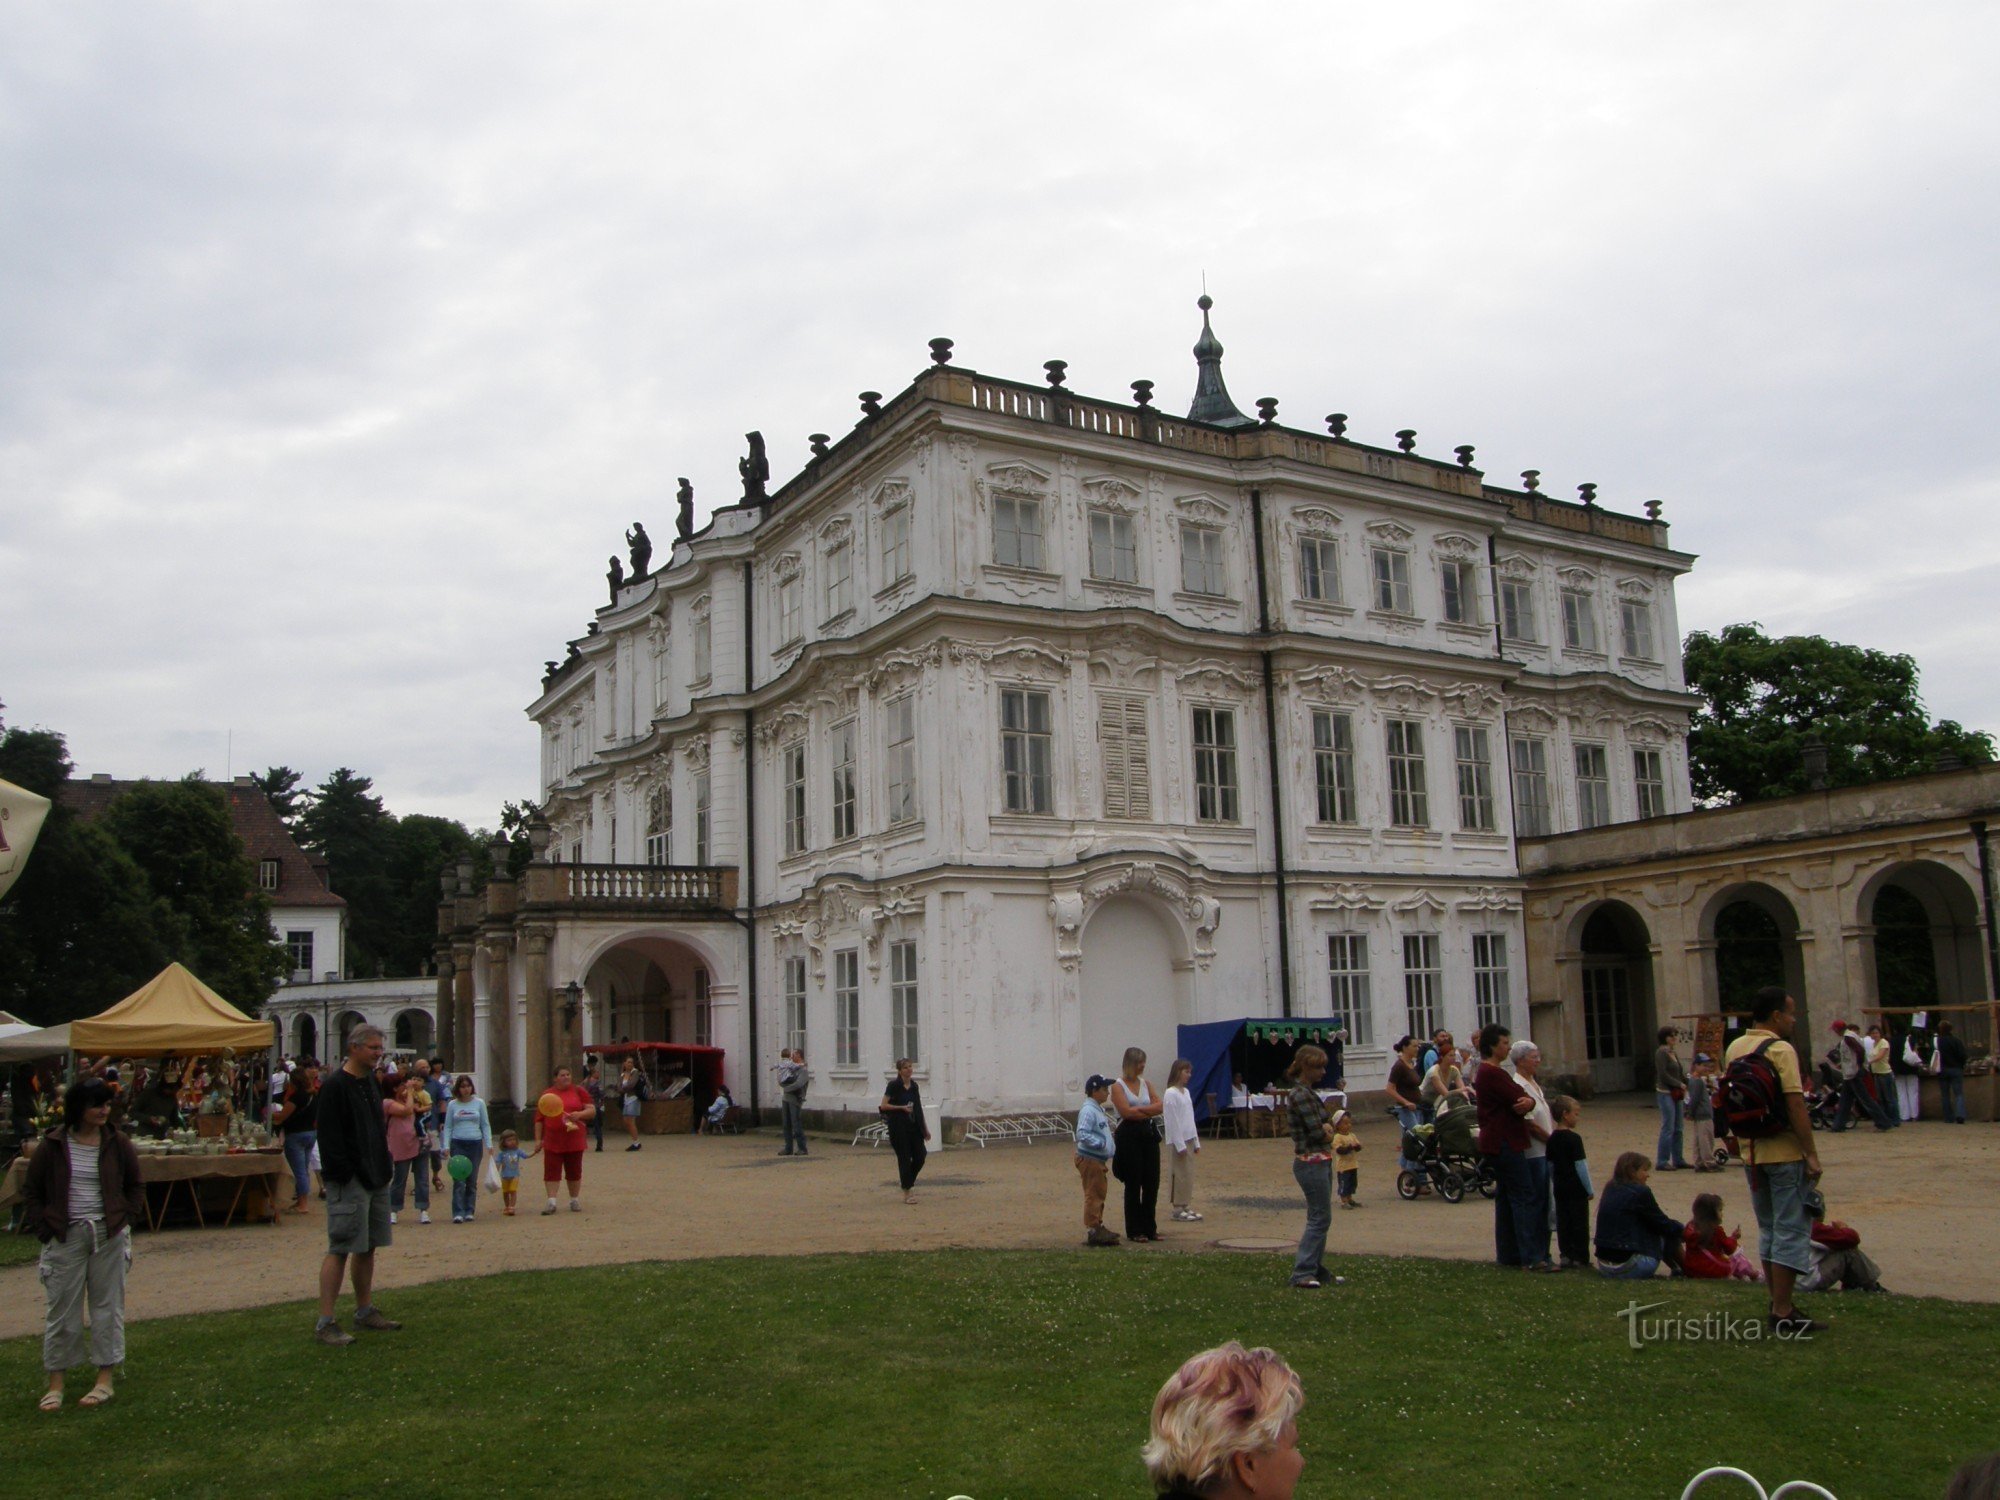 Ploskovice - résidence d'été des empereurs et des ministres des affaires étrangères